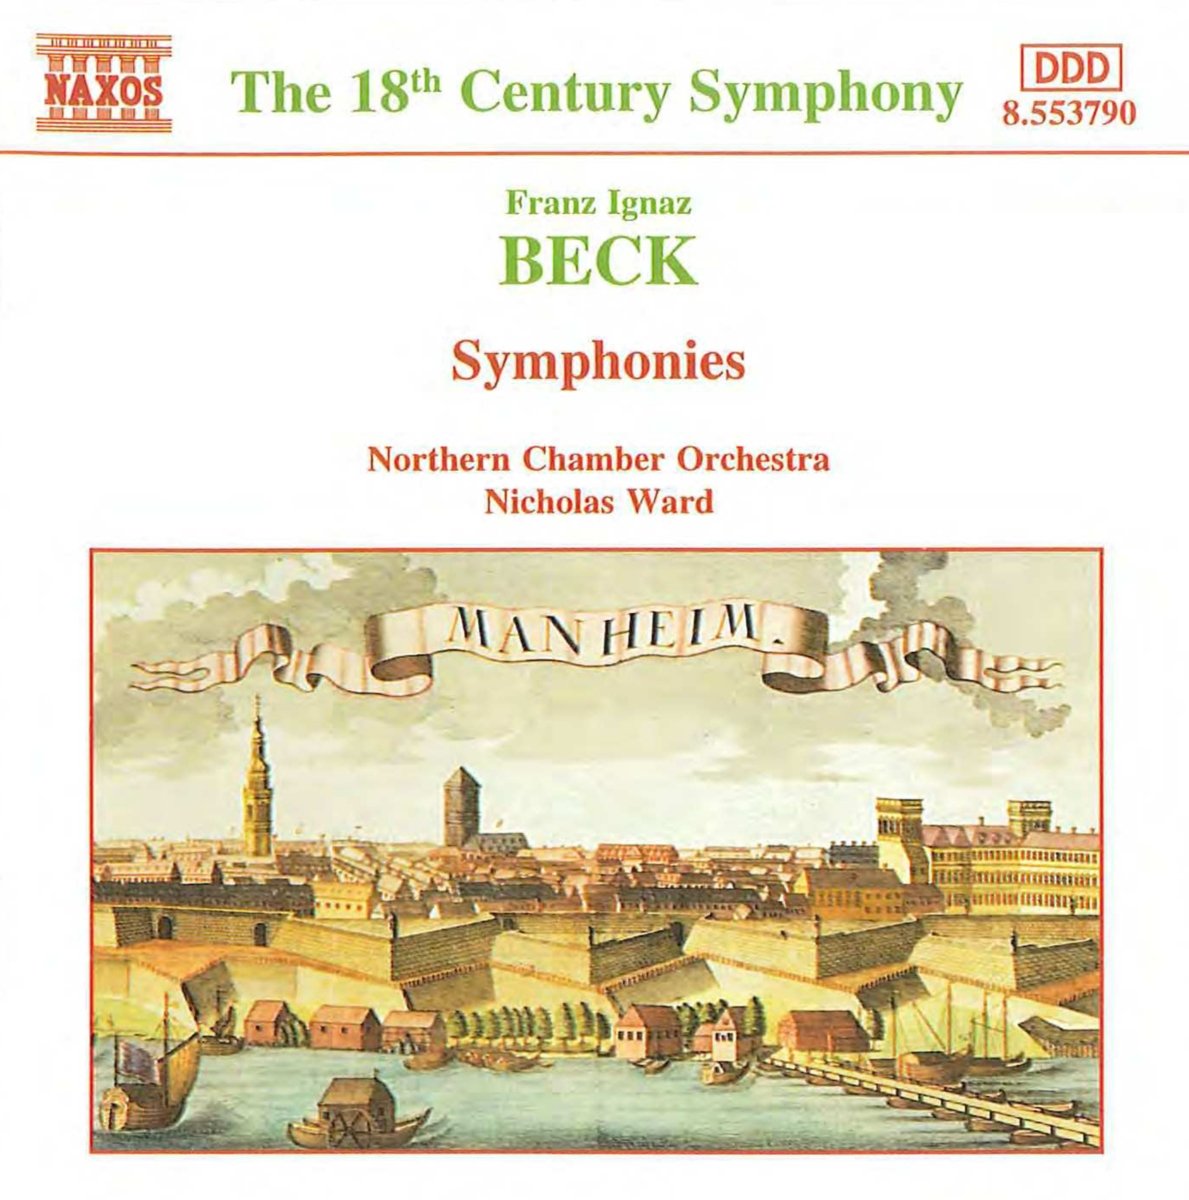 BECK: Symphonies